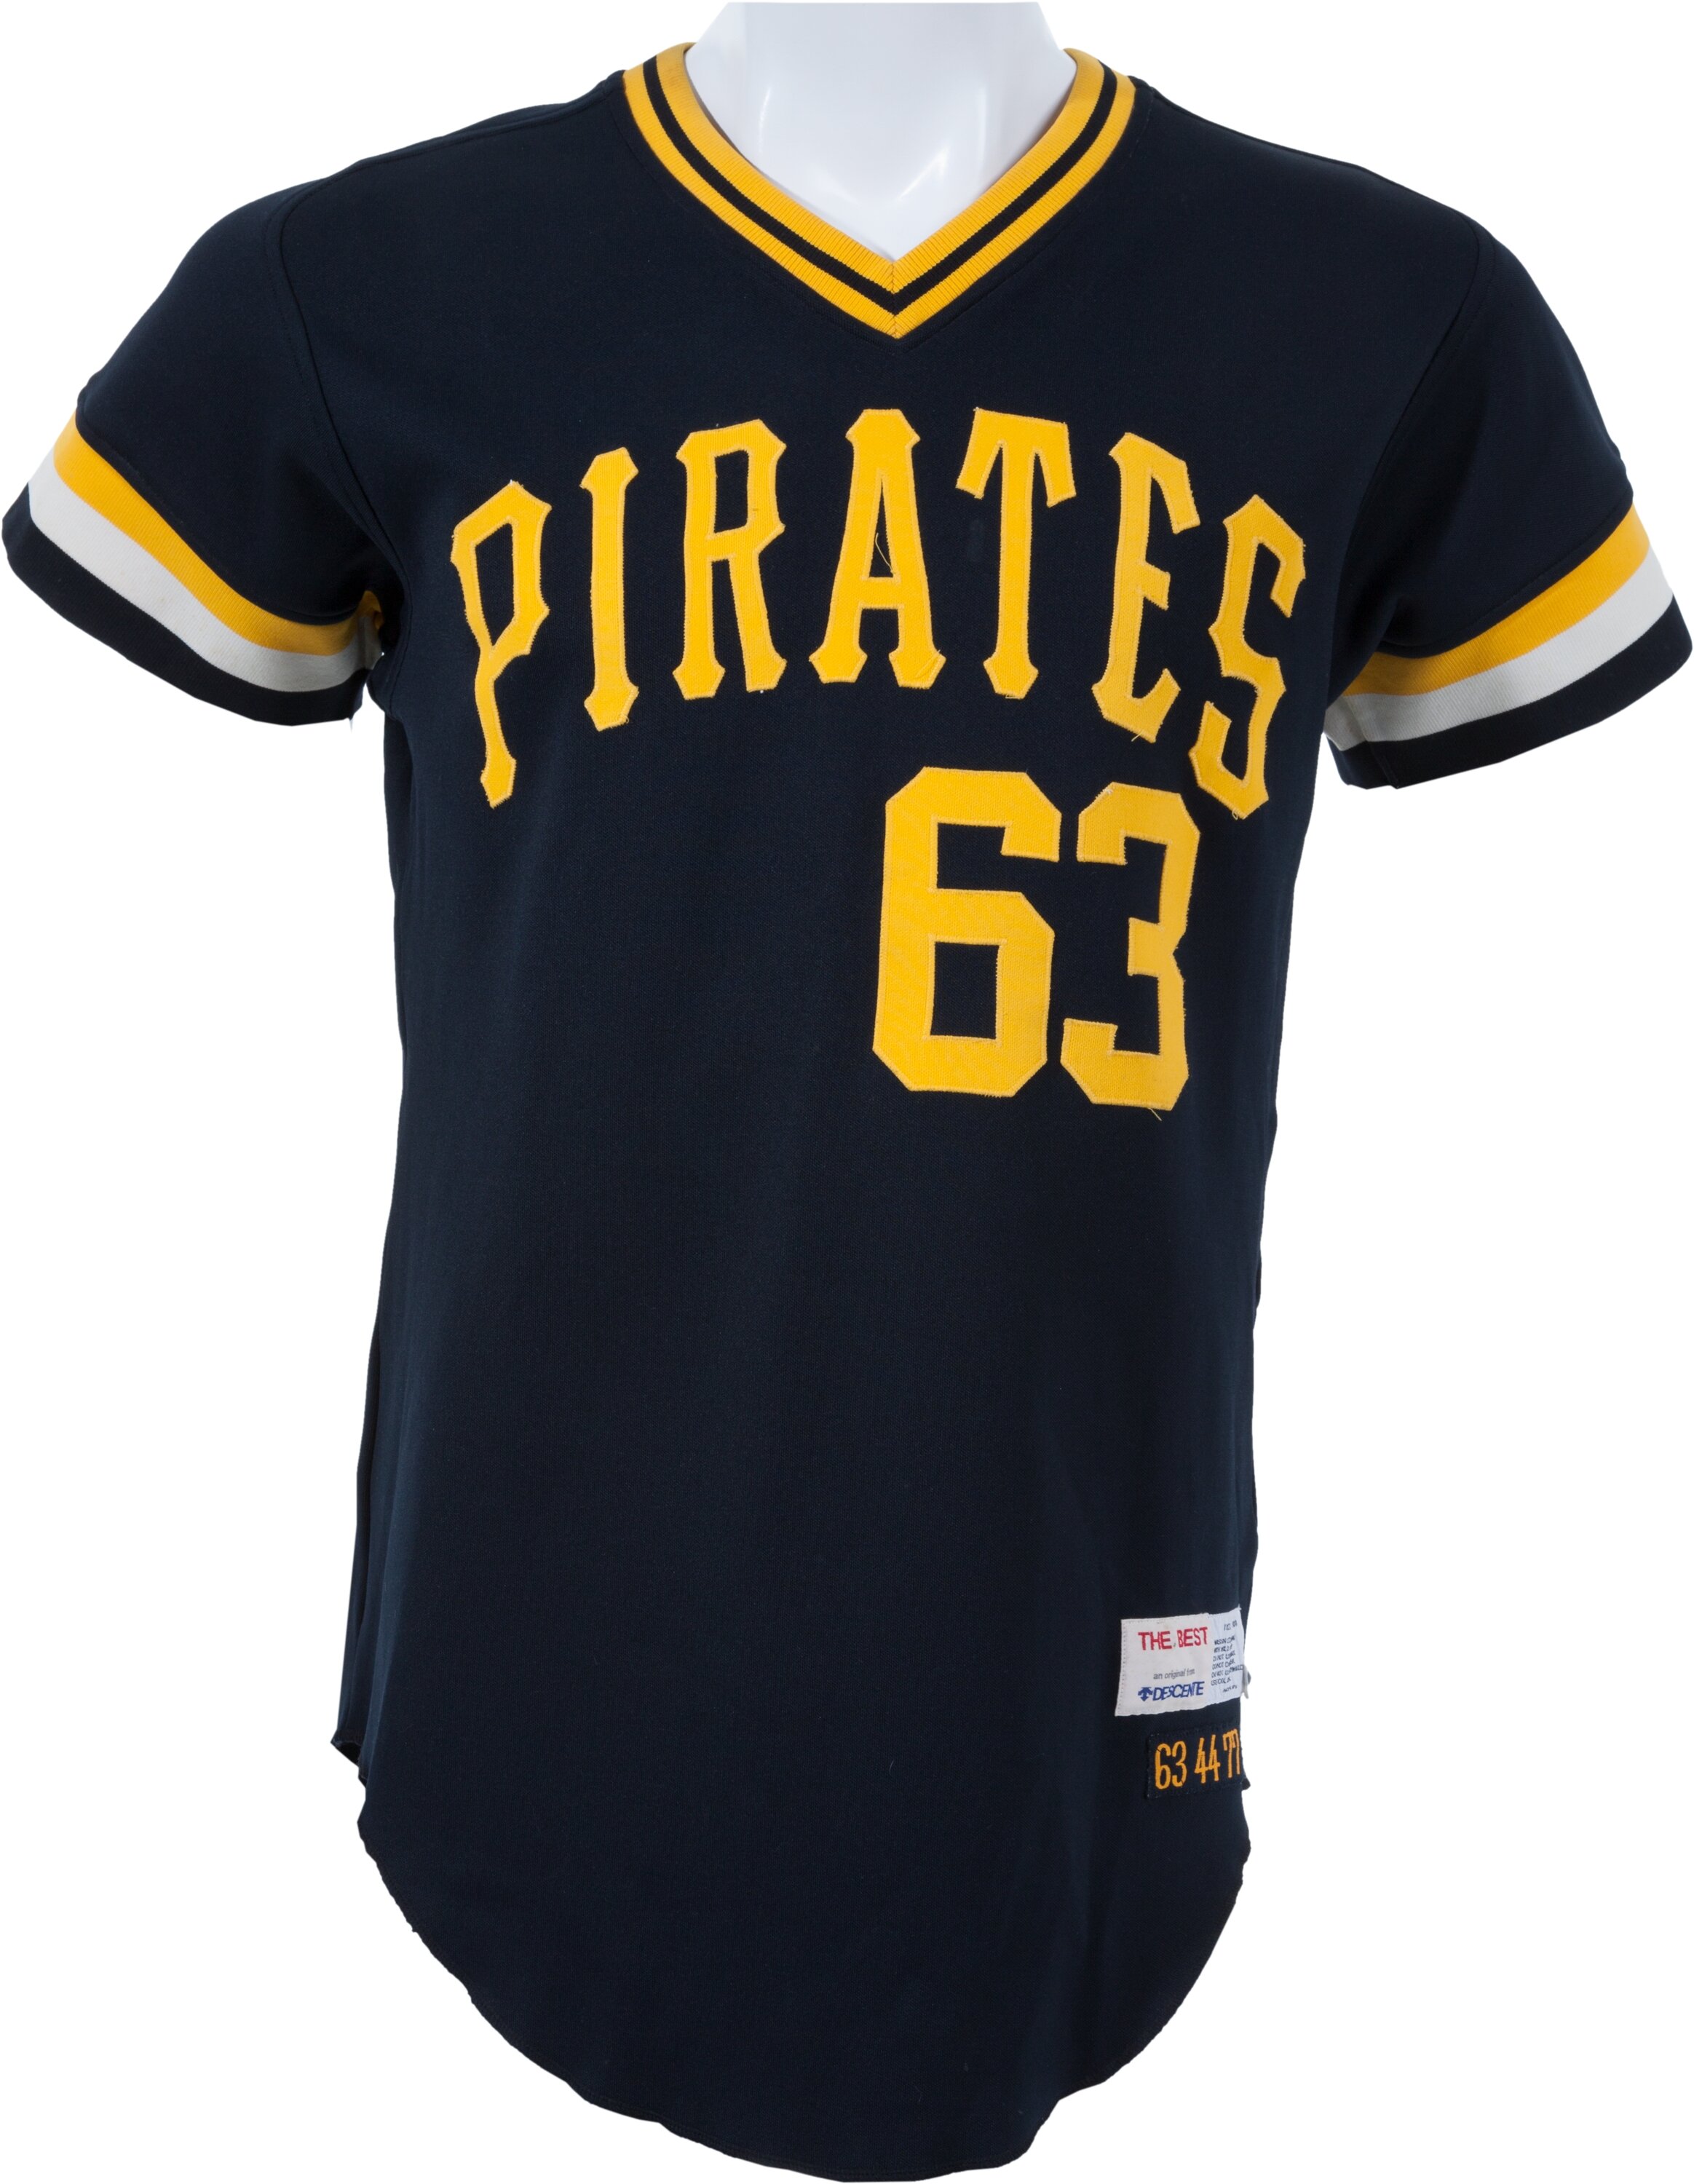 pirates game worn jersey